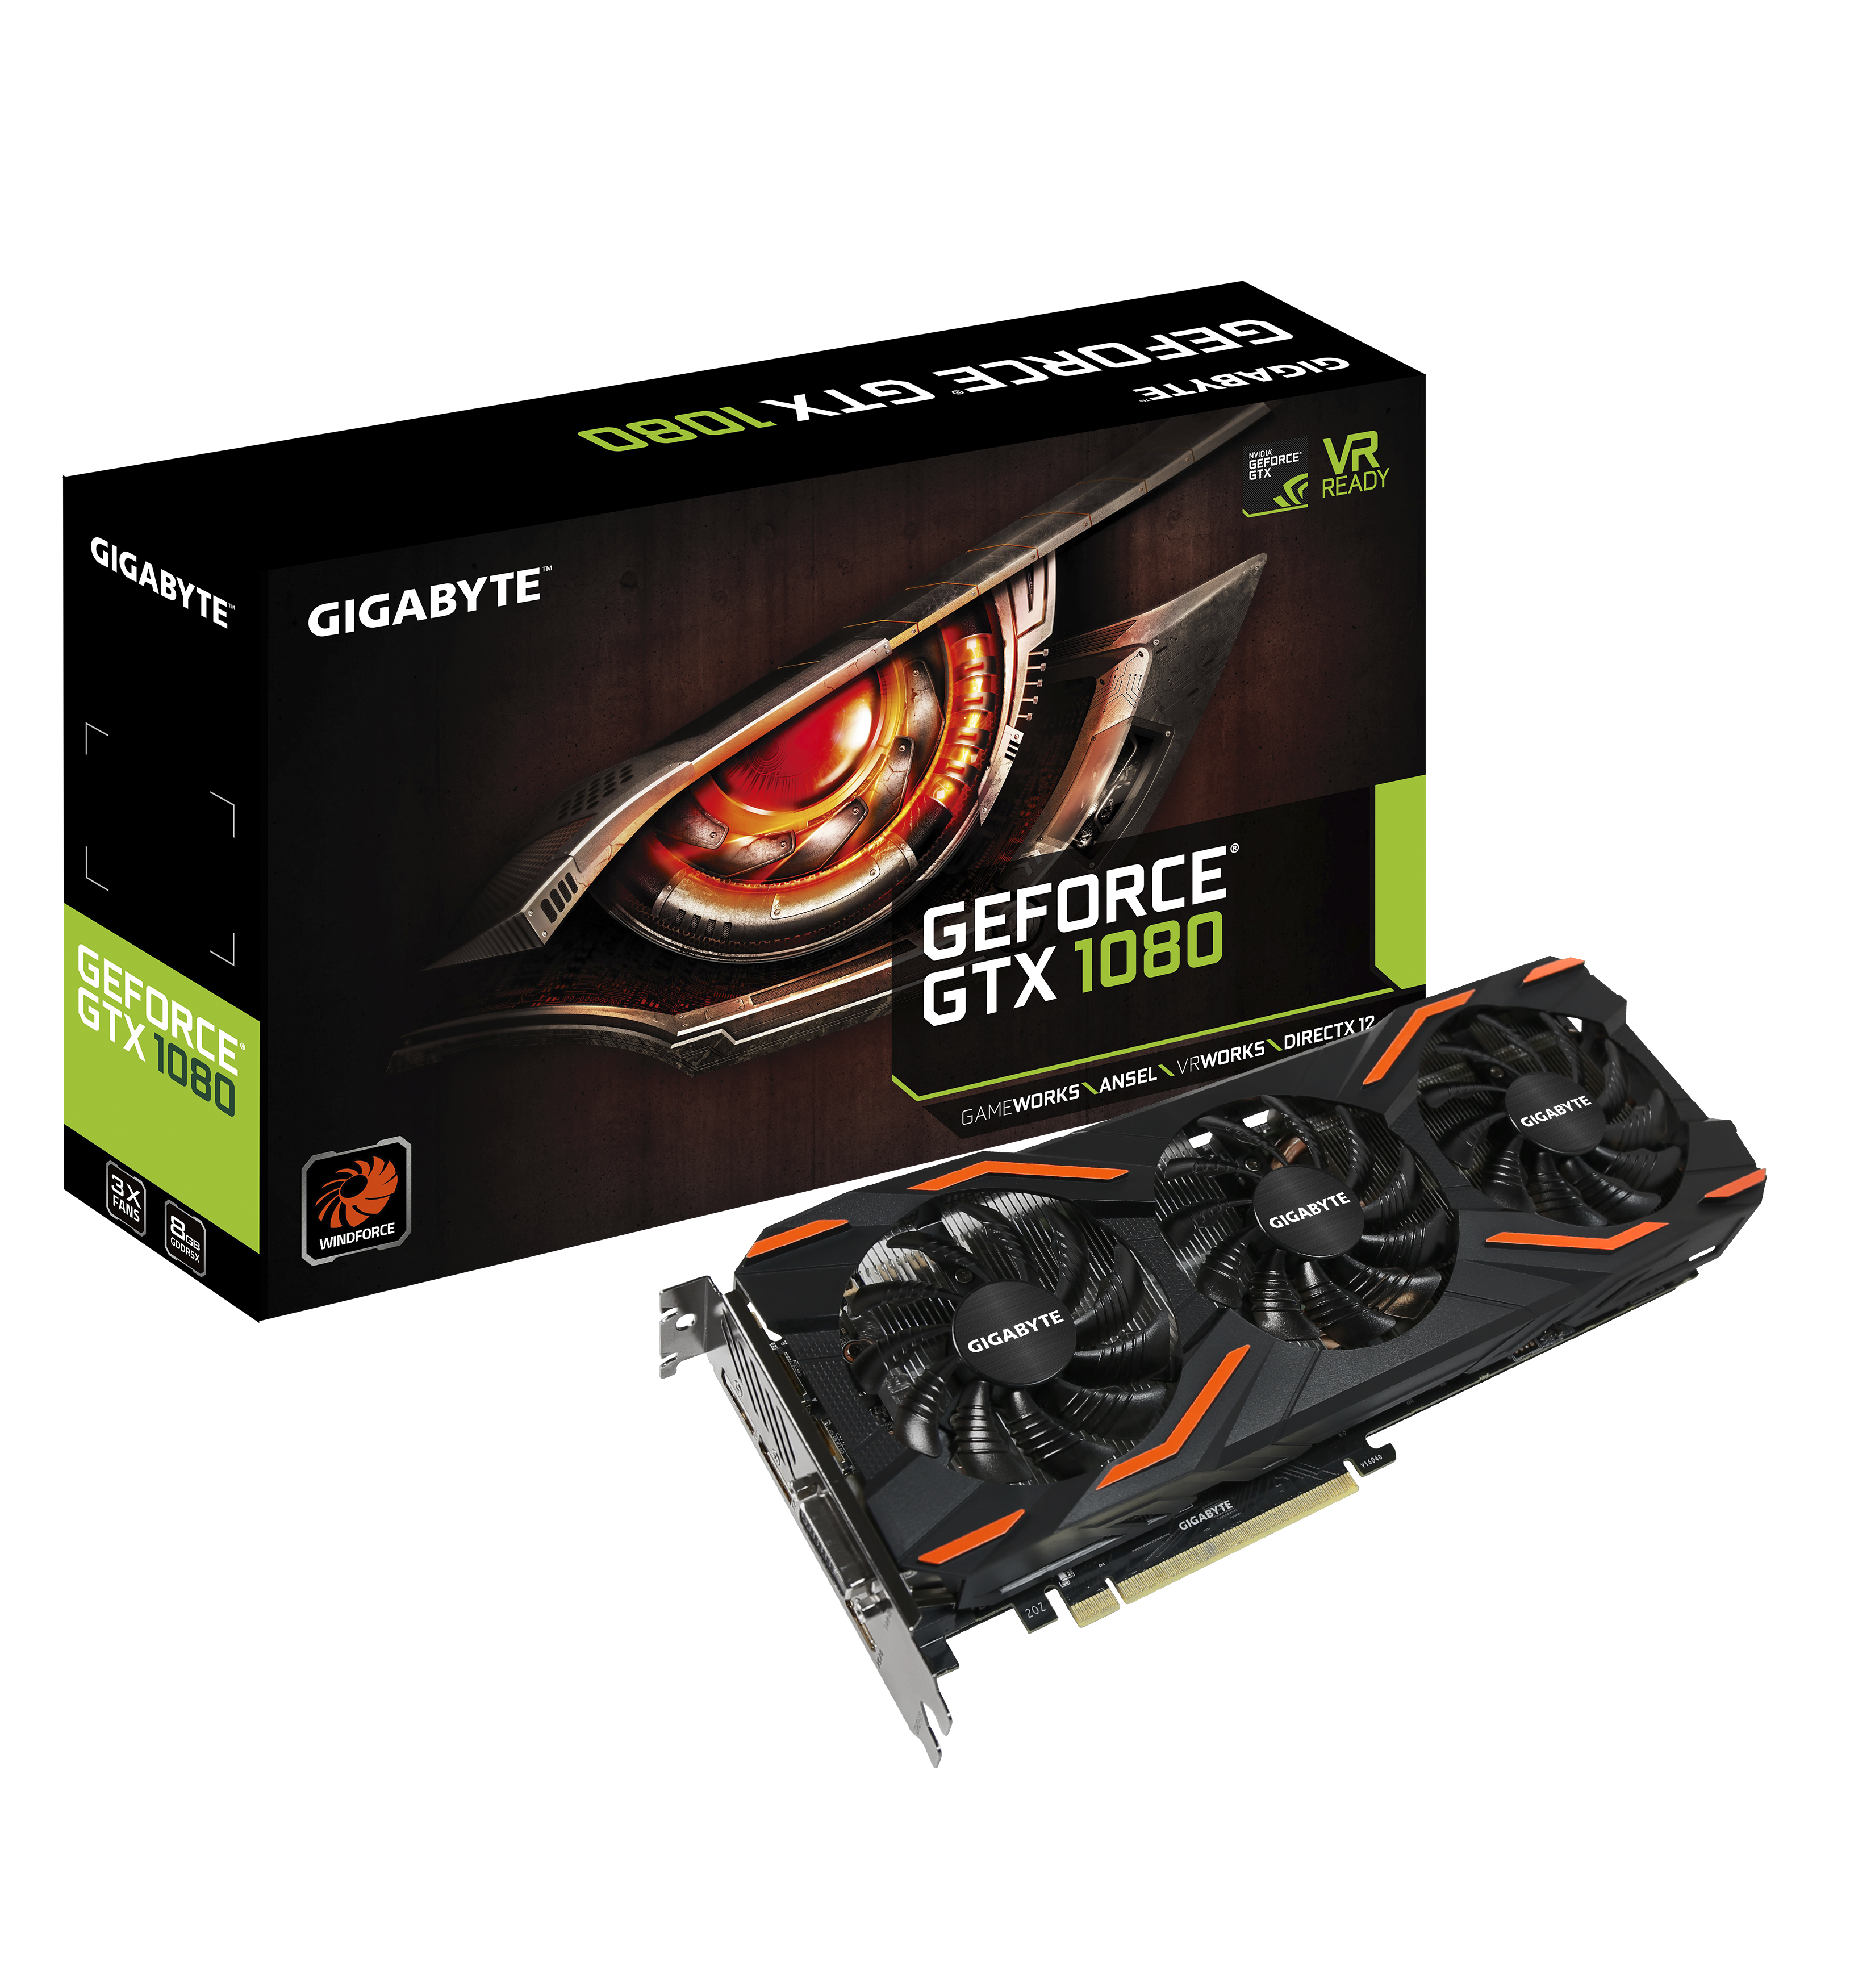 GeForce® GTX 1080 D5X 8G Key Features | Graphics Card - GIGABYTE